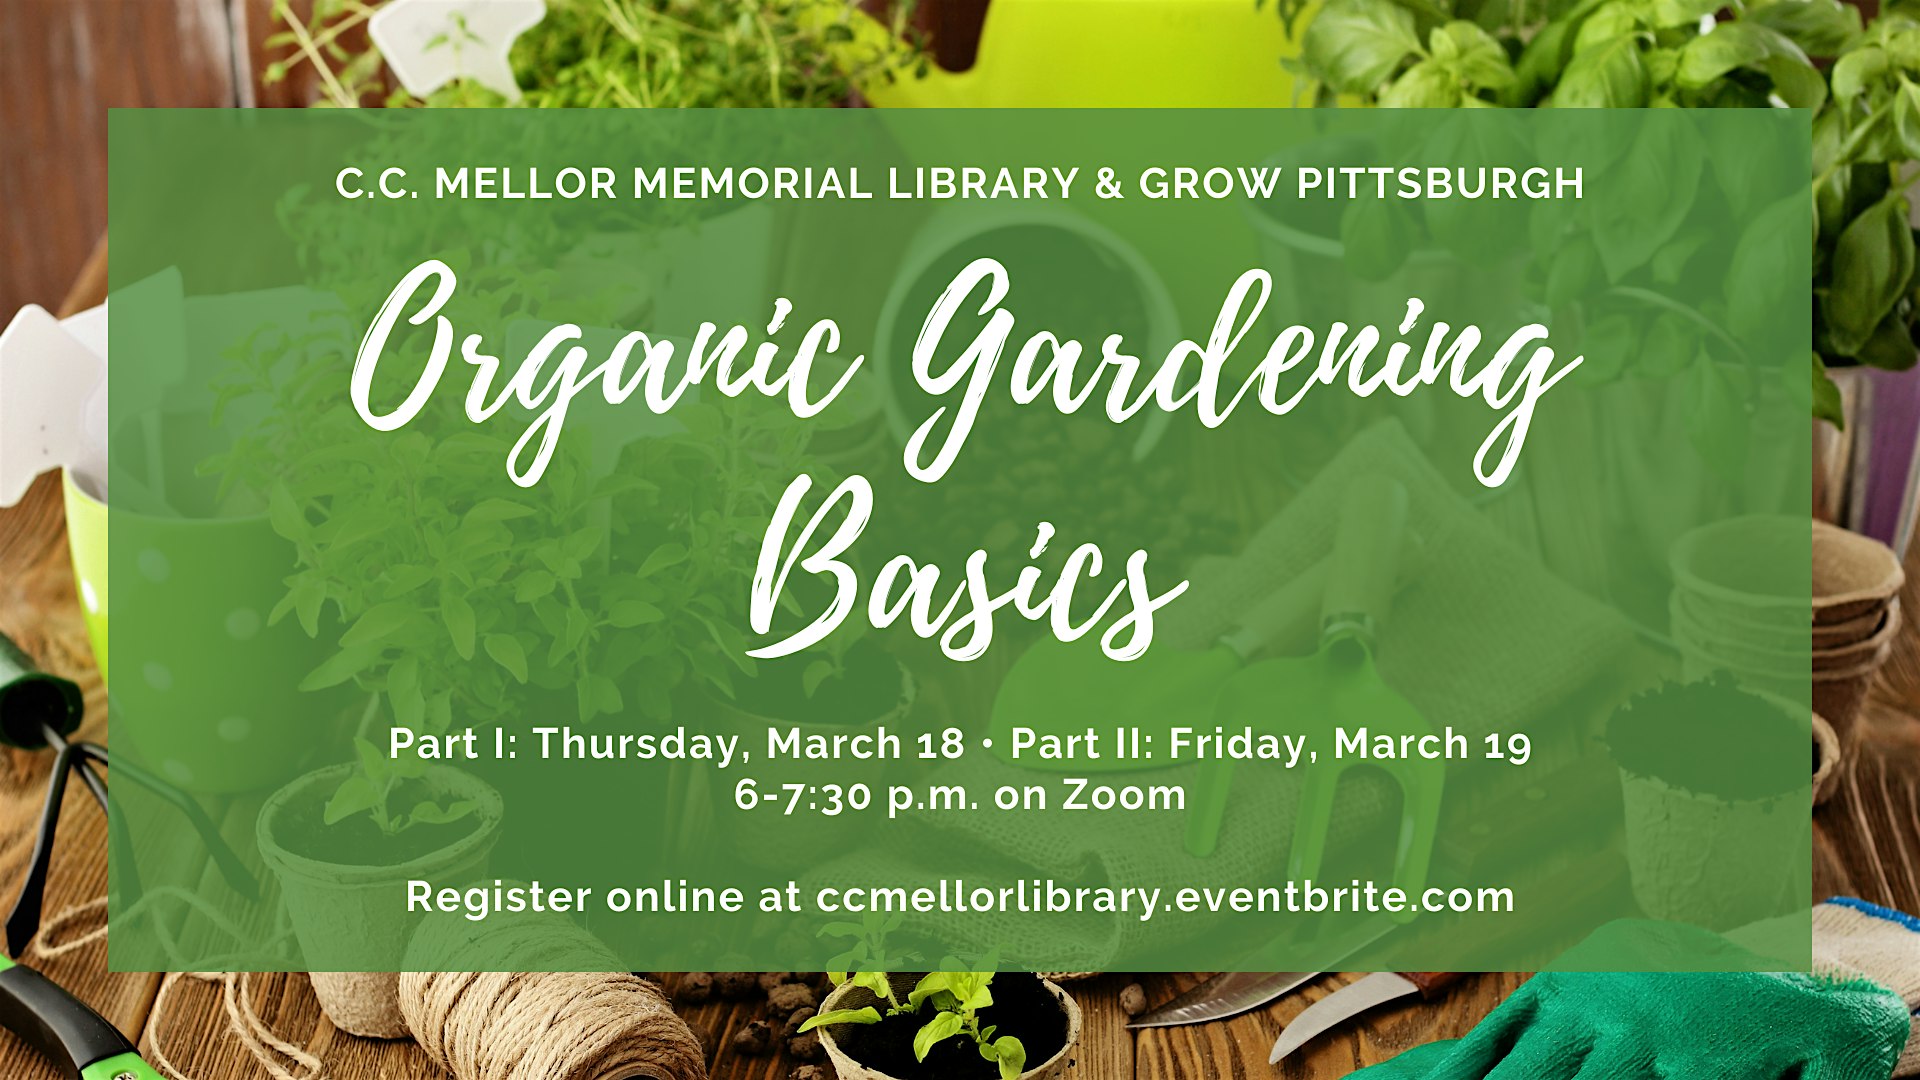 THU, MAR 18, 2021 - Organic Gardening Basics Part I